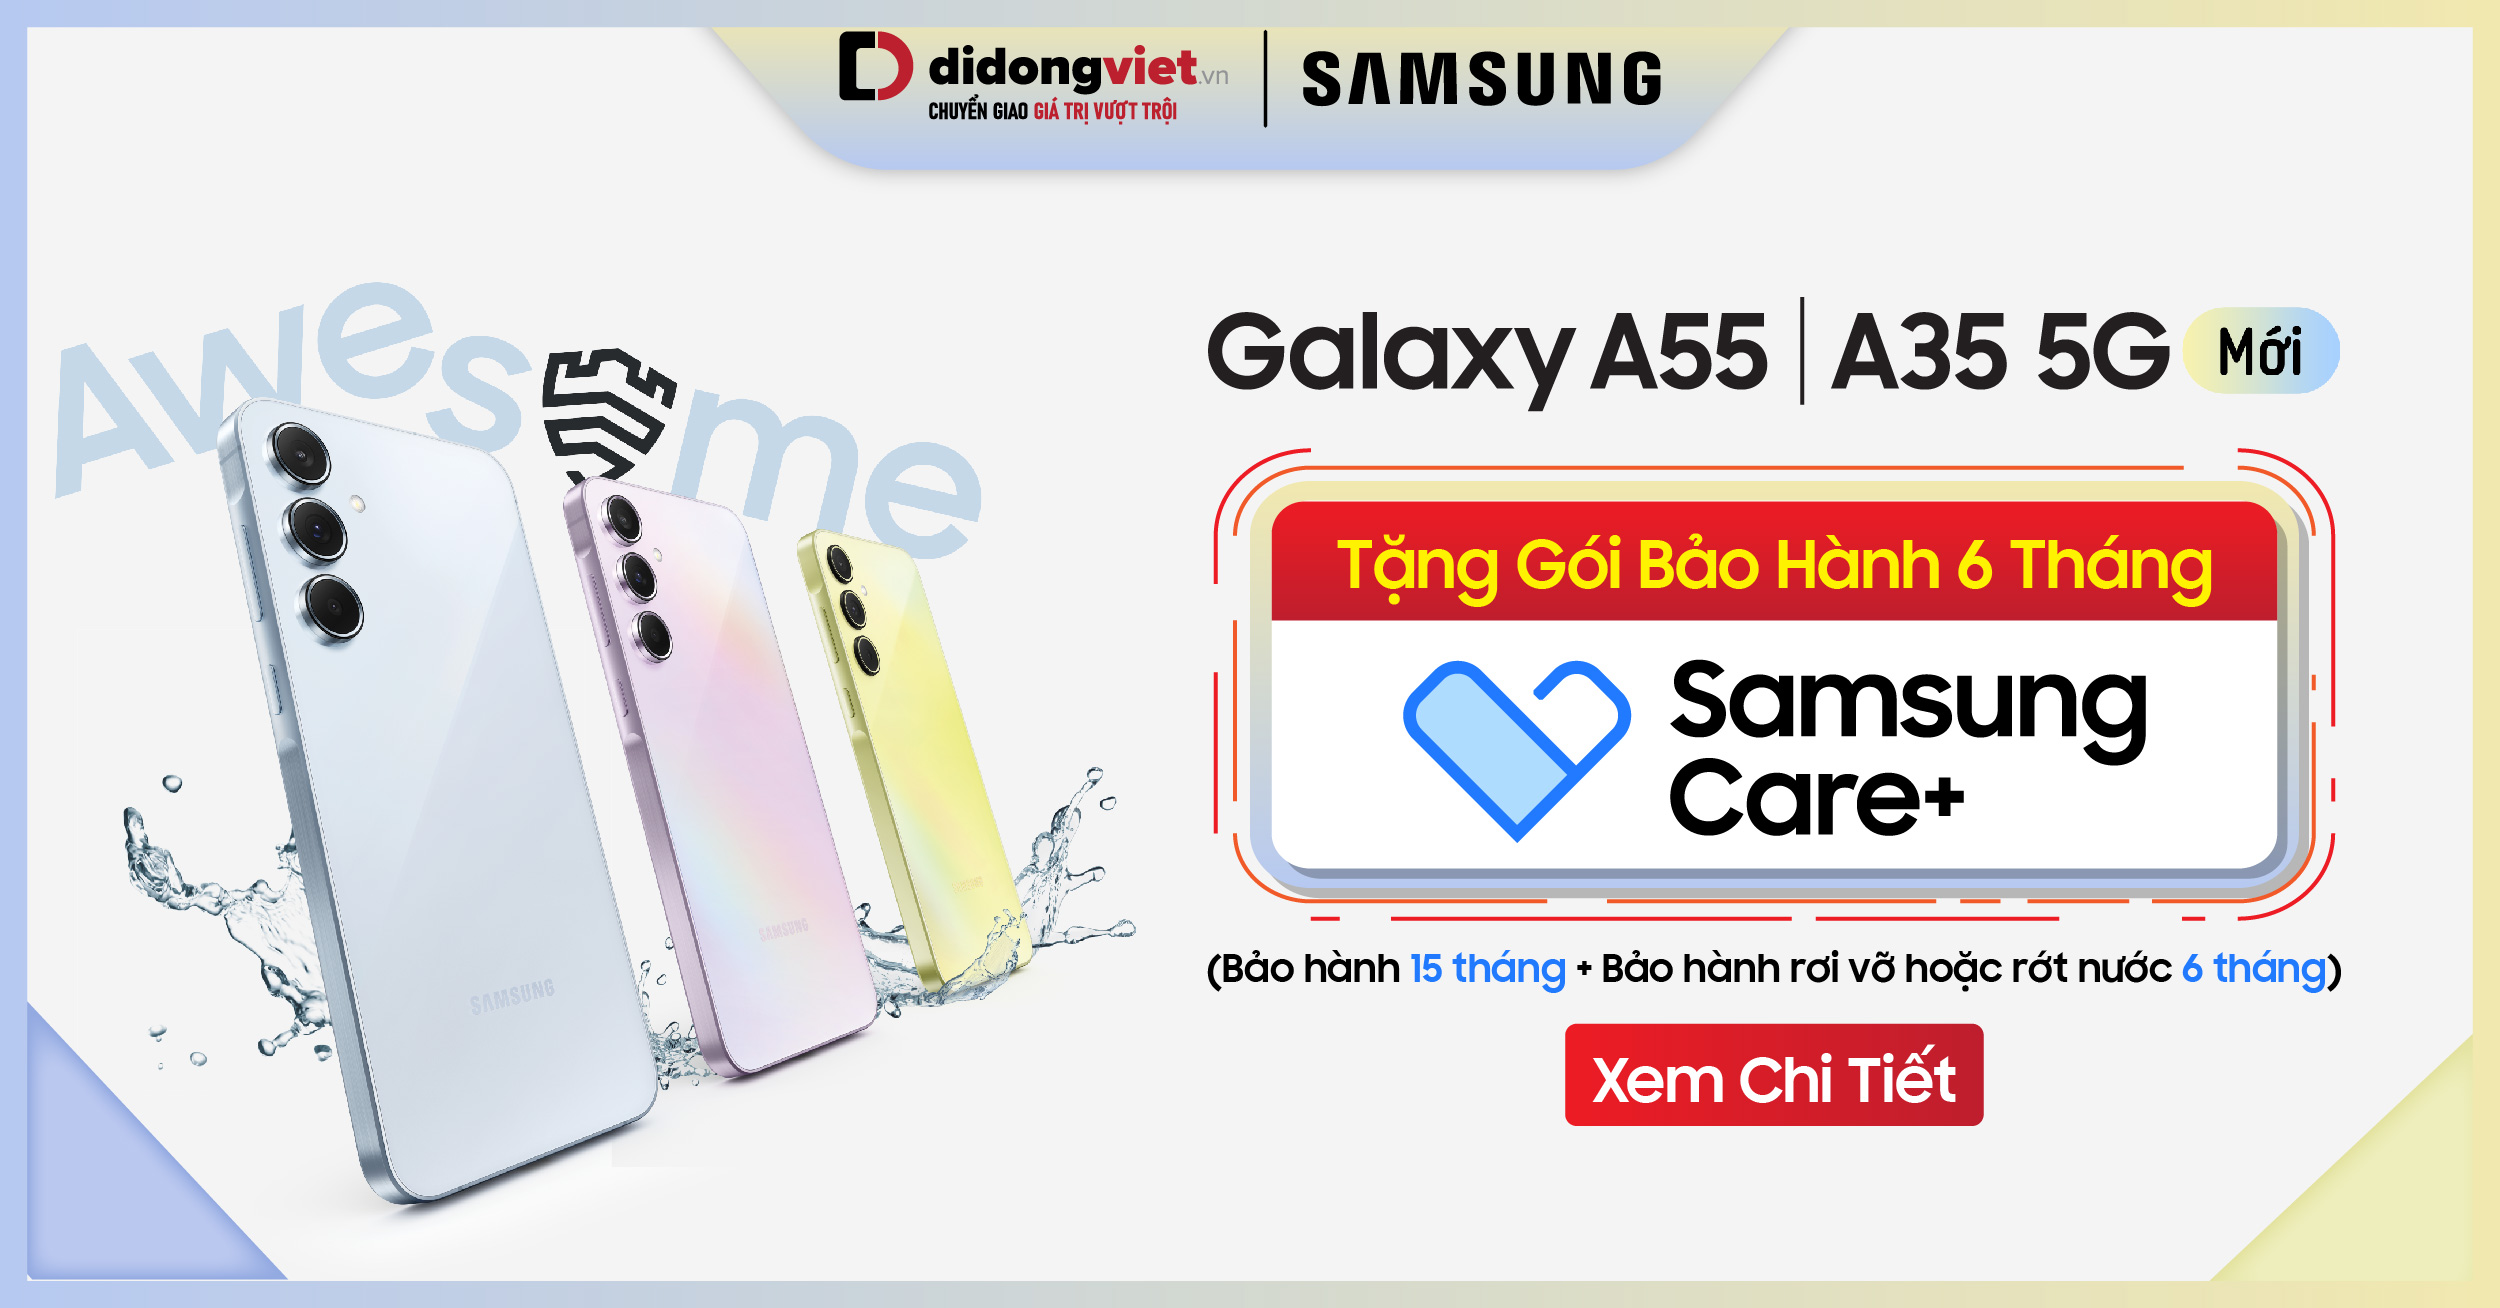 Sắm ngay bộ đôi siêu phẩm Galaxy A55 | A35 5G nhận ngay gói bảo hành Samsung Care + 6 tháng